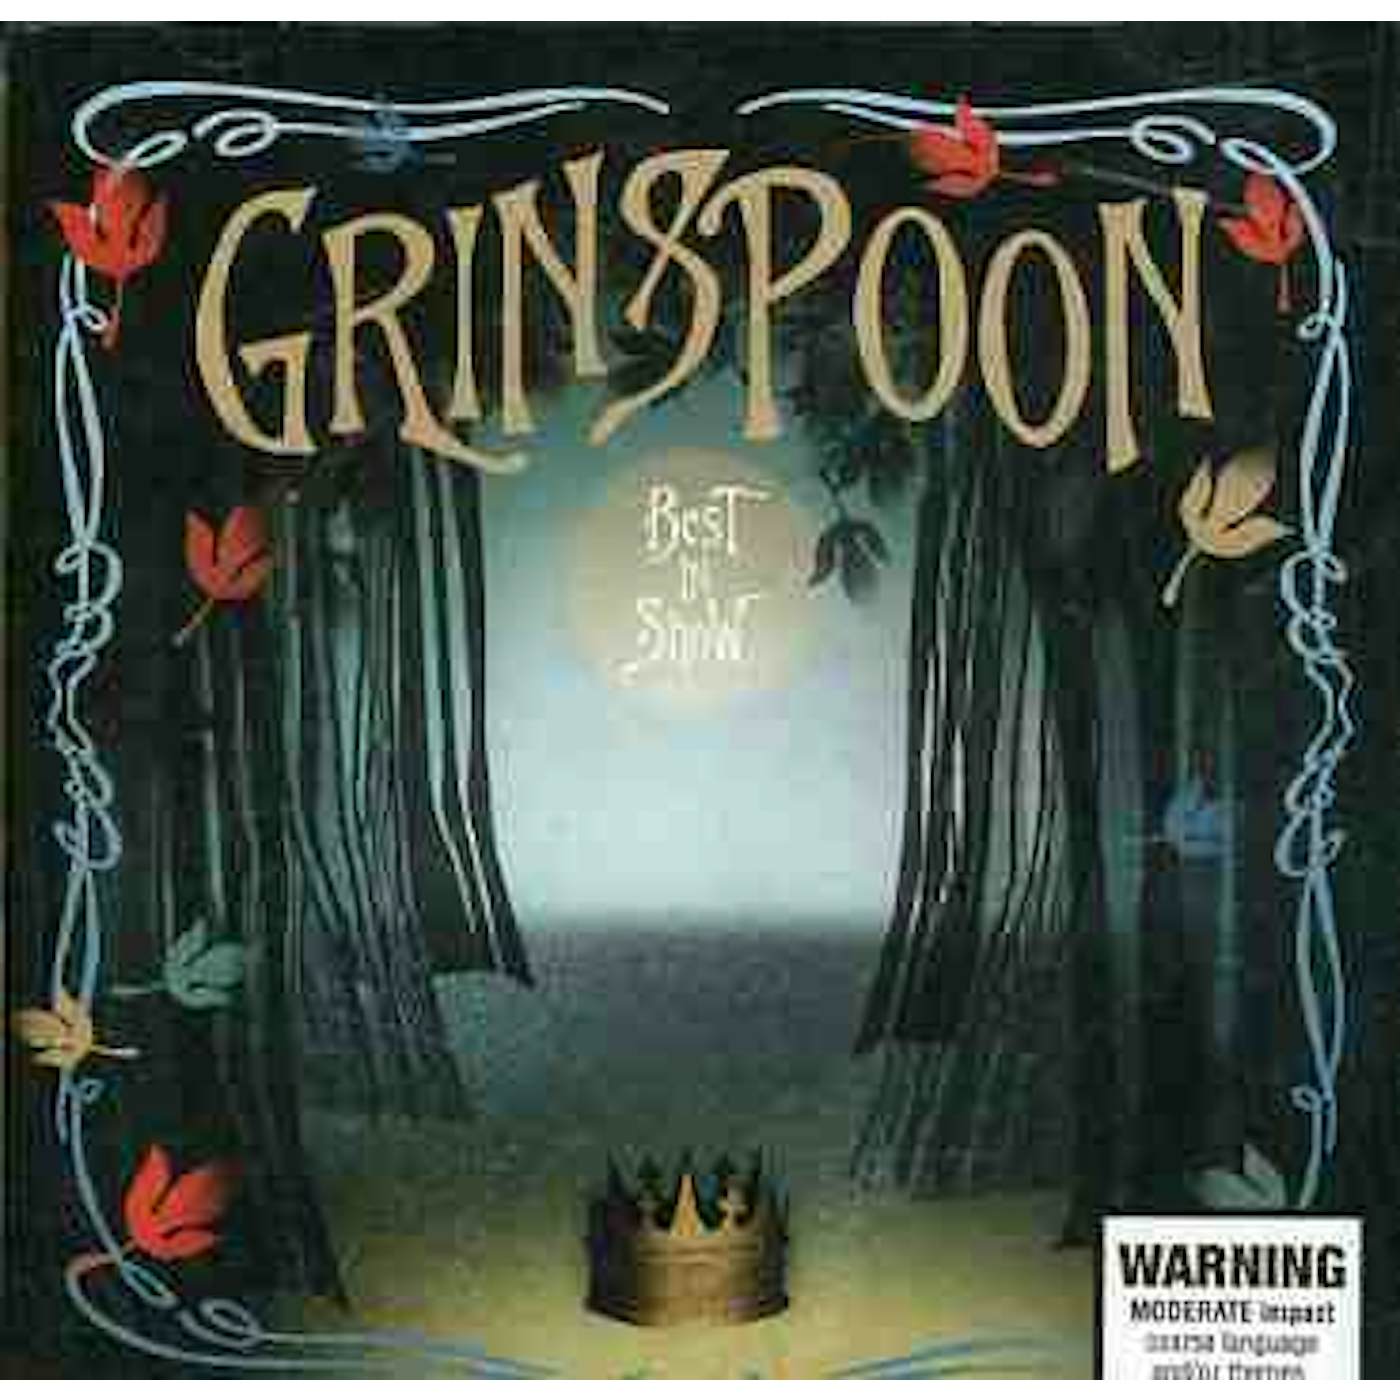 BEST IN SHOW-BEST OF GRINSPOON CD